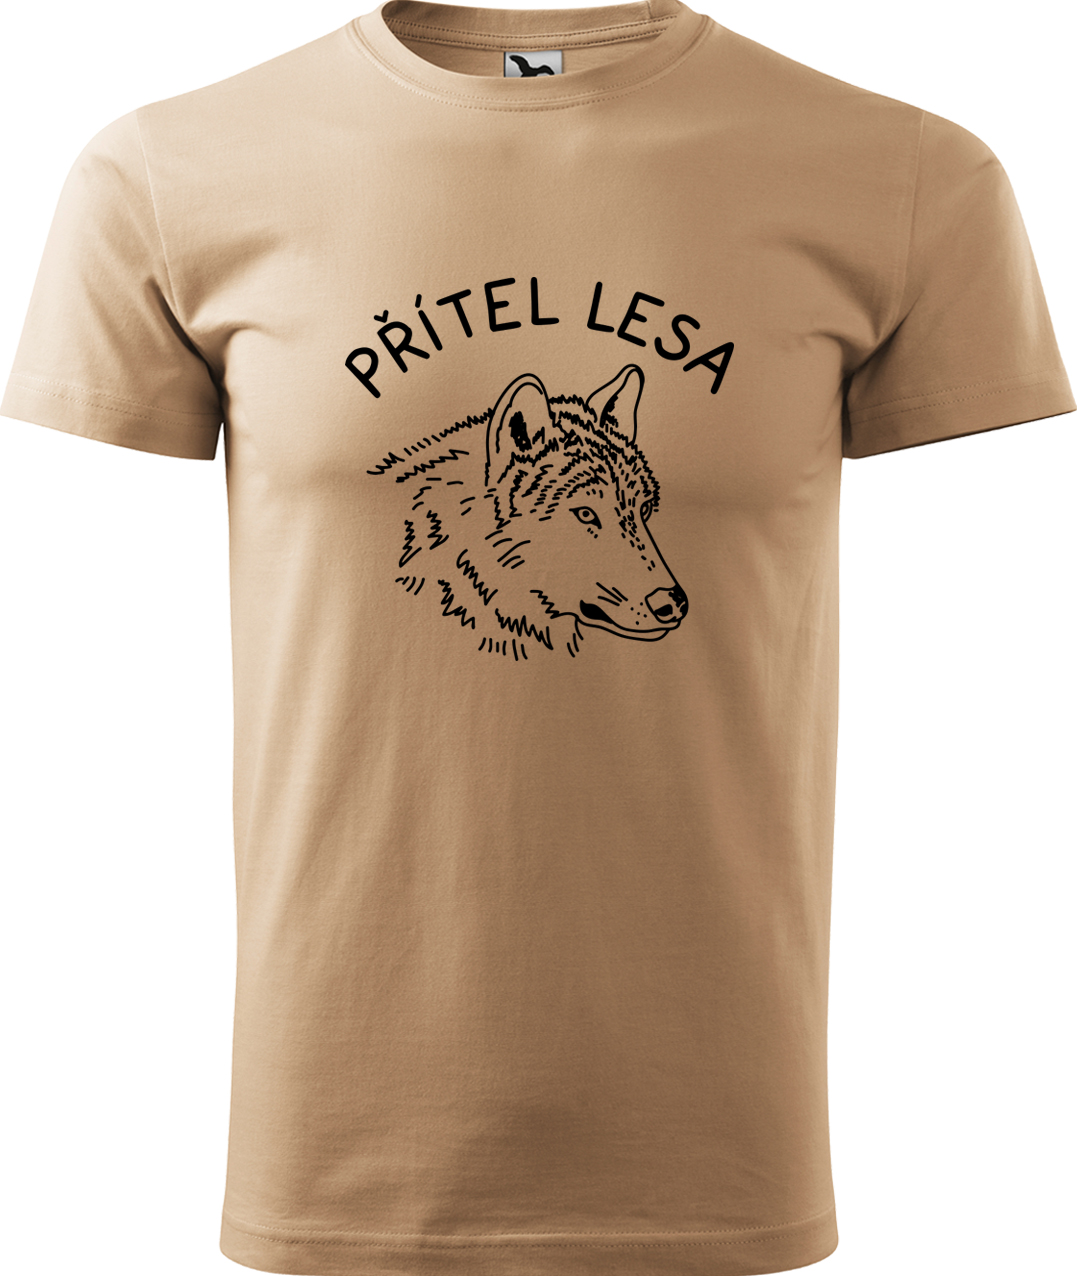 Pánské tričko s vlkem - Přítel lesa Velikost: XL, Barva: Písková (08), Střih: pánský